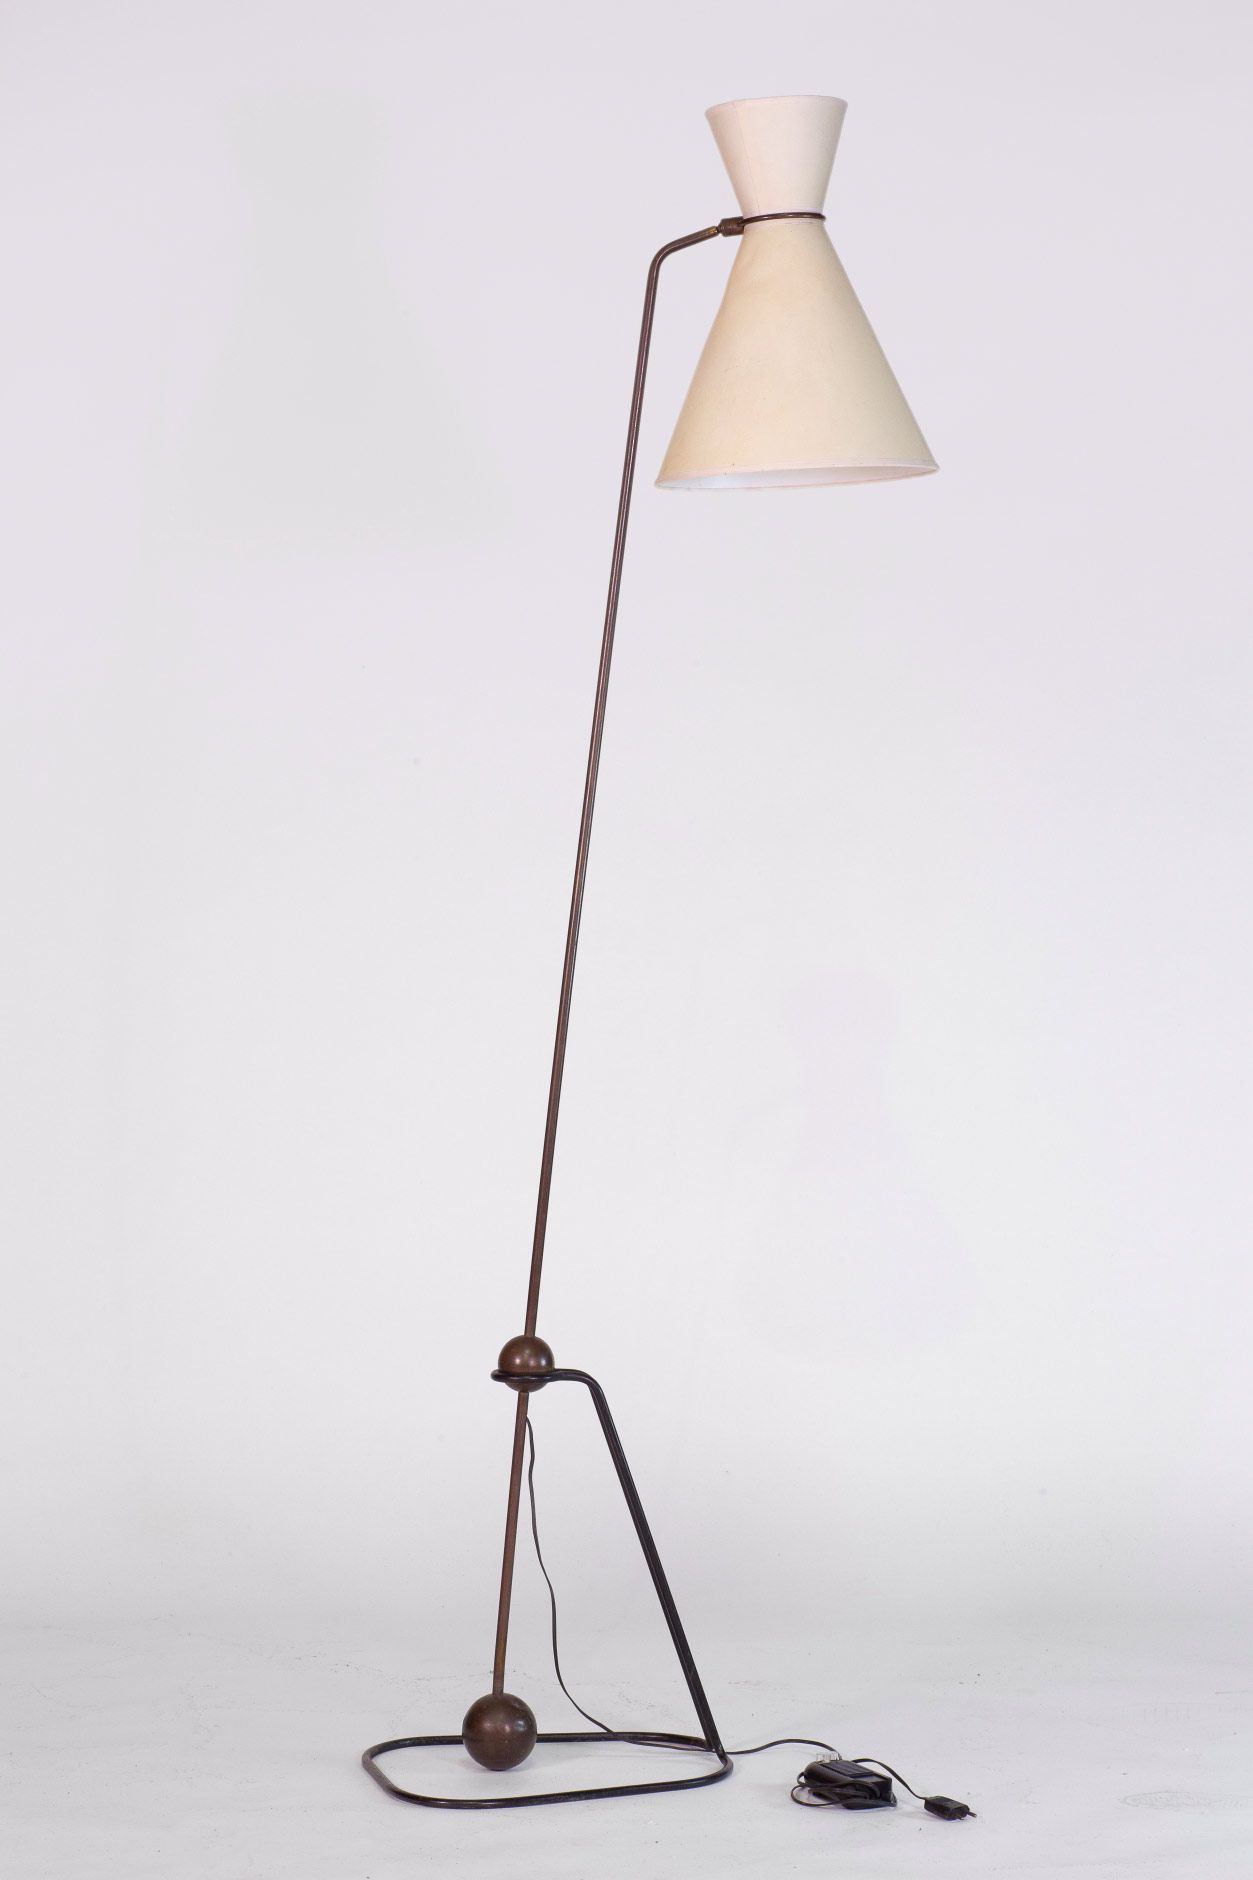 Pierre GUARICHE (1926-1995) Modello G2 

Lampada da terra


Ottone, metallo lacc&hellip;